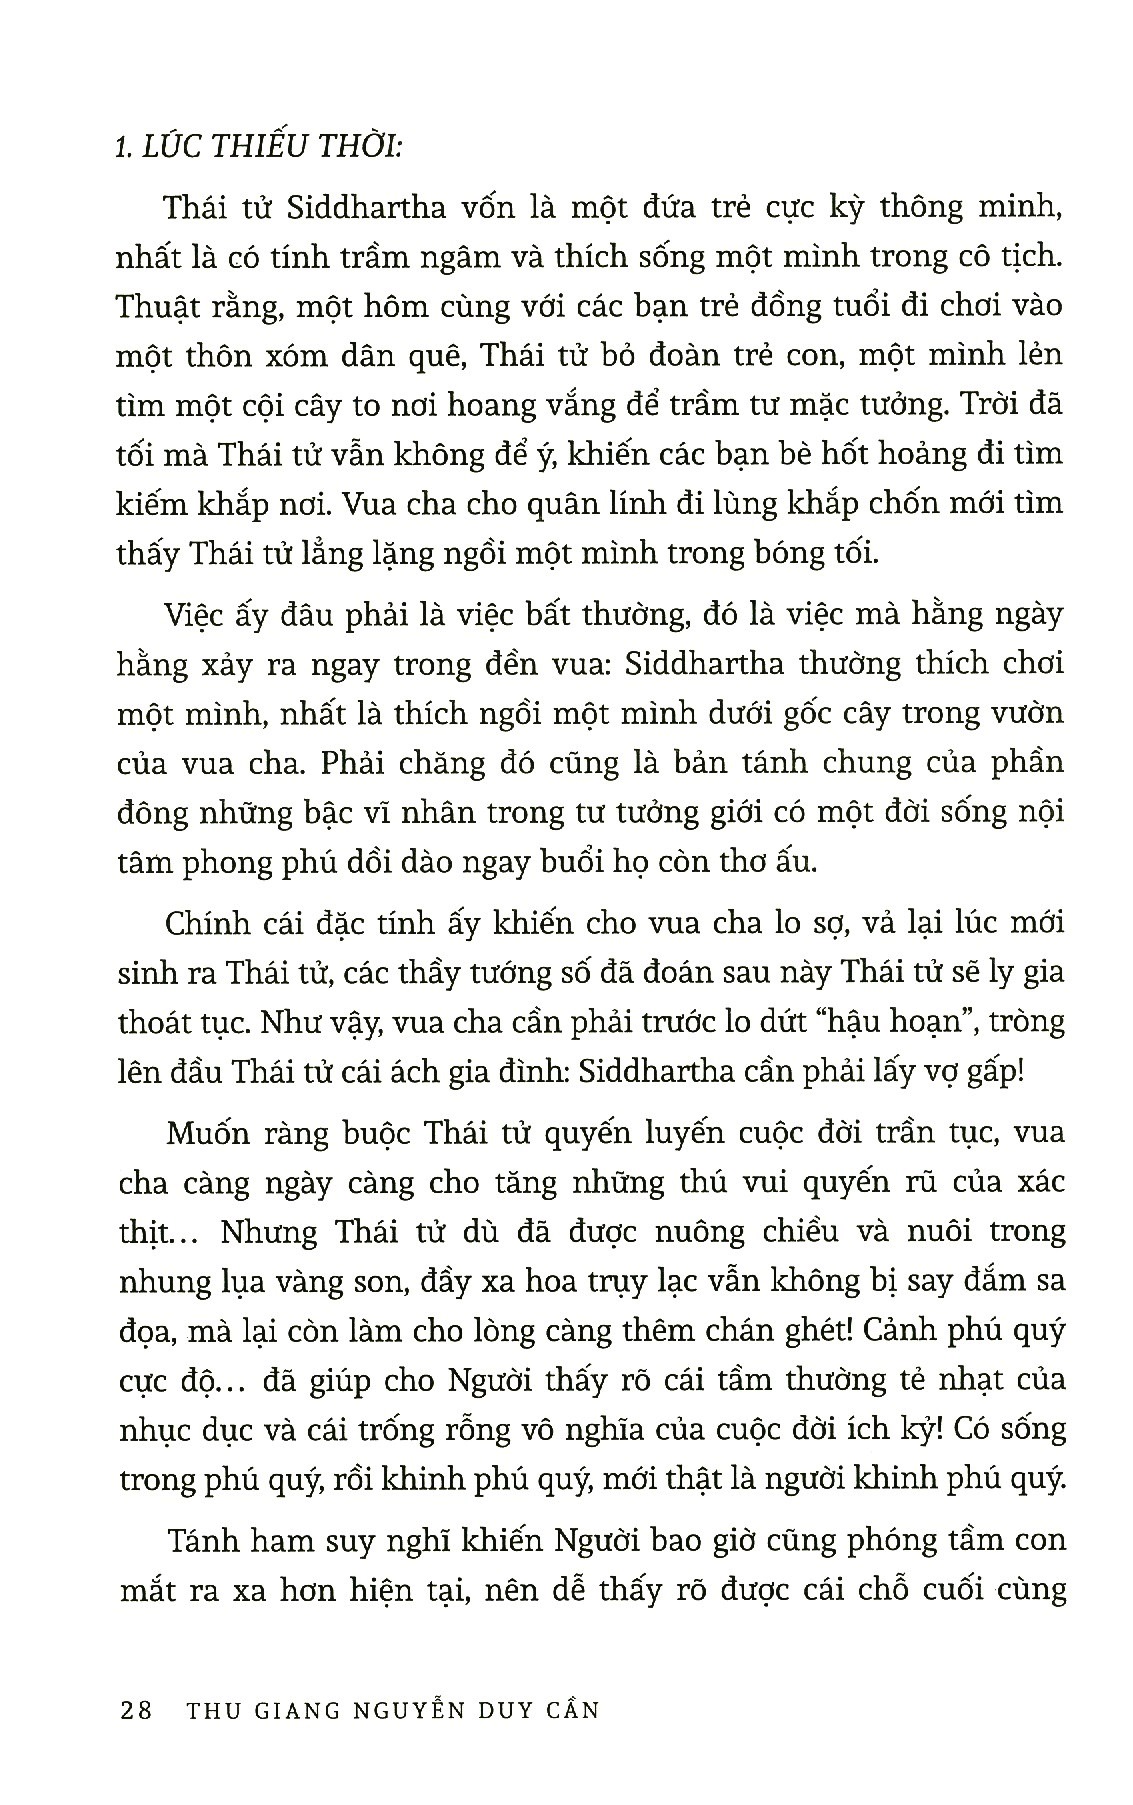 Thu Giang Nguyễn Duy Cần - Phật Học Tinh Hoa PDF